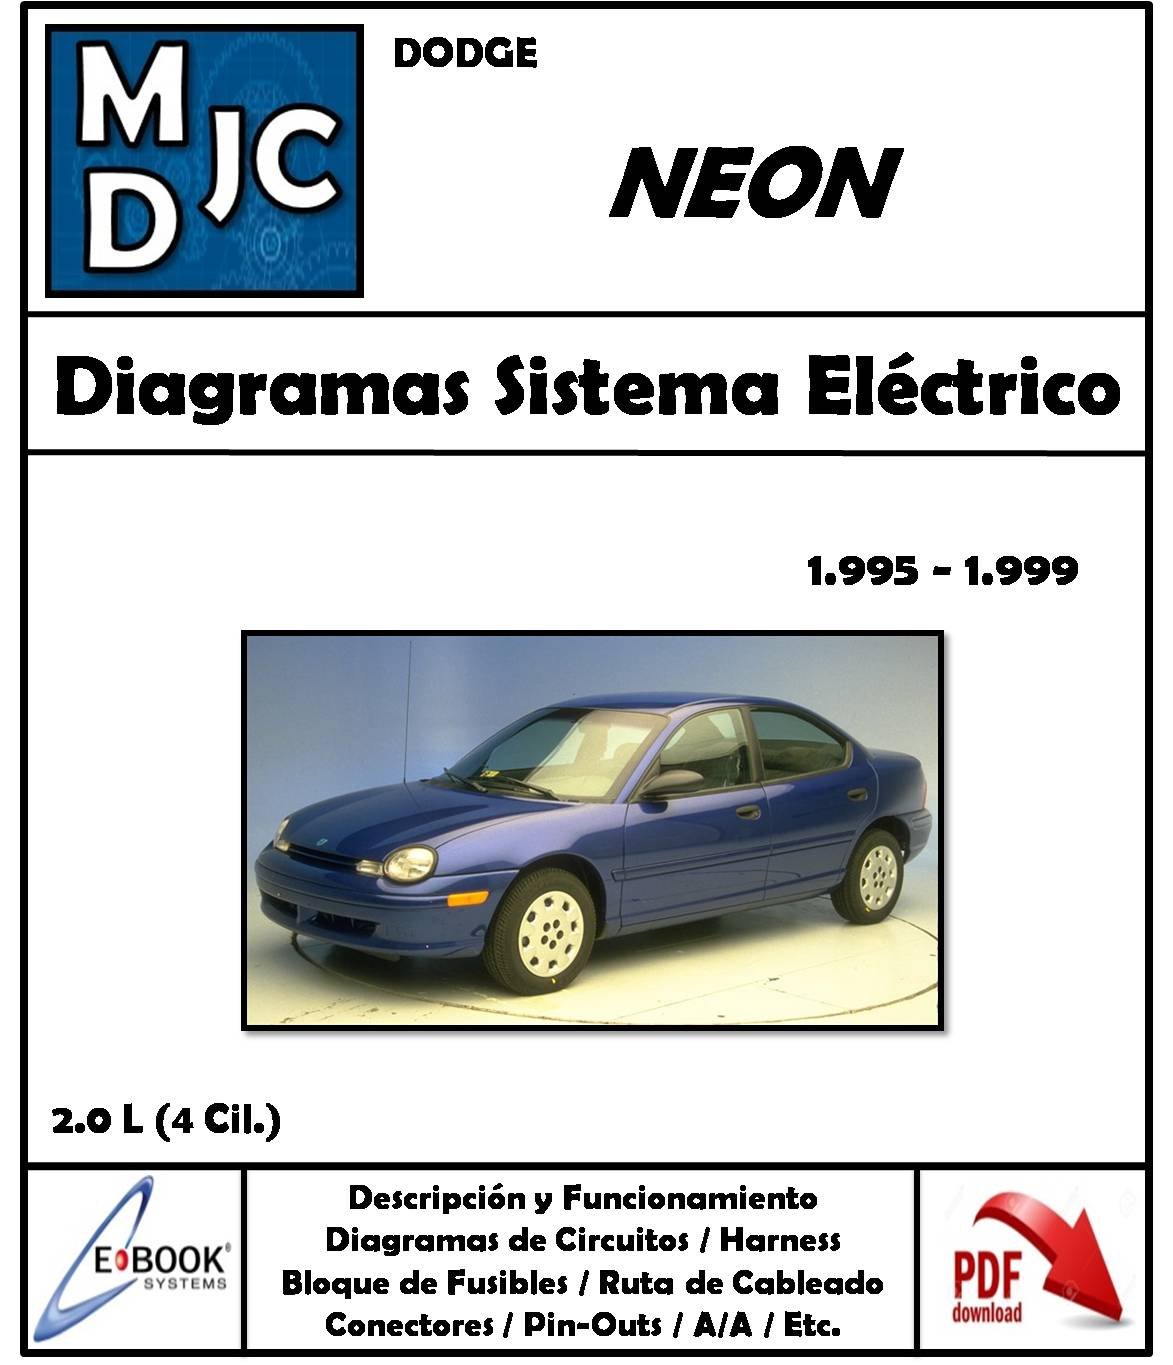 Diagramas de Cableado Sistema Eléctrico Dodge / Chrysler Neon 1995-1999